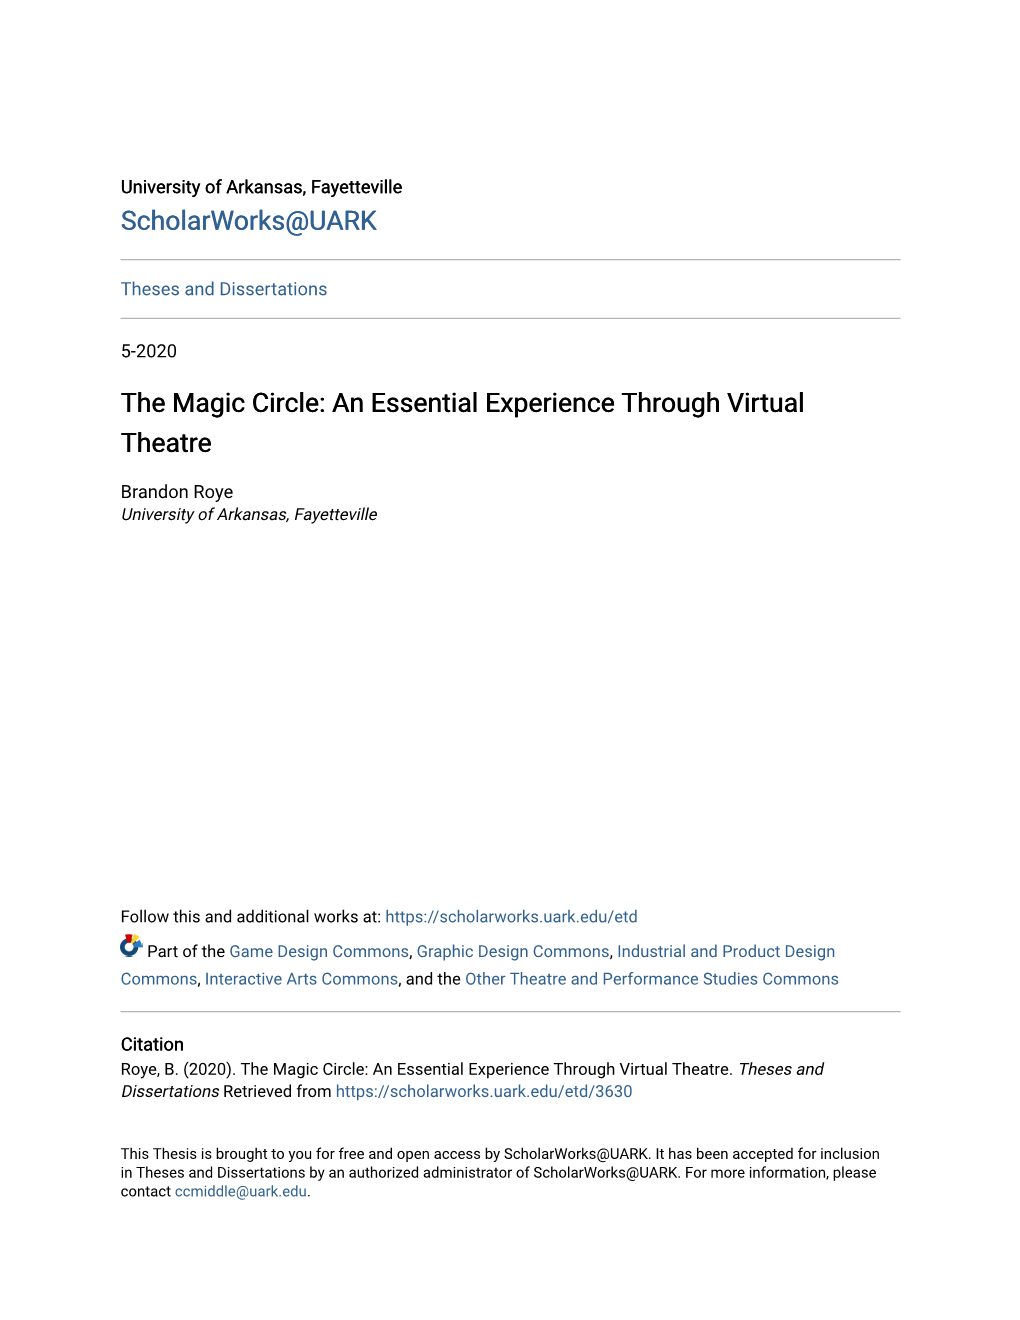 The Magic Circle: an Essential Experience Through Virtual Theatre